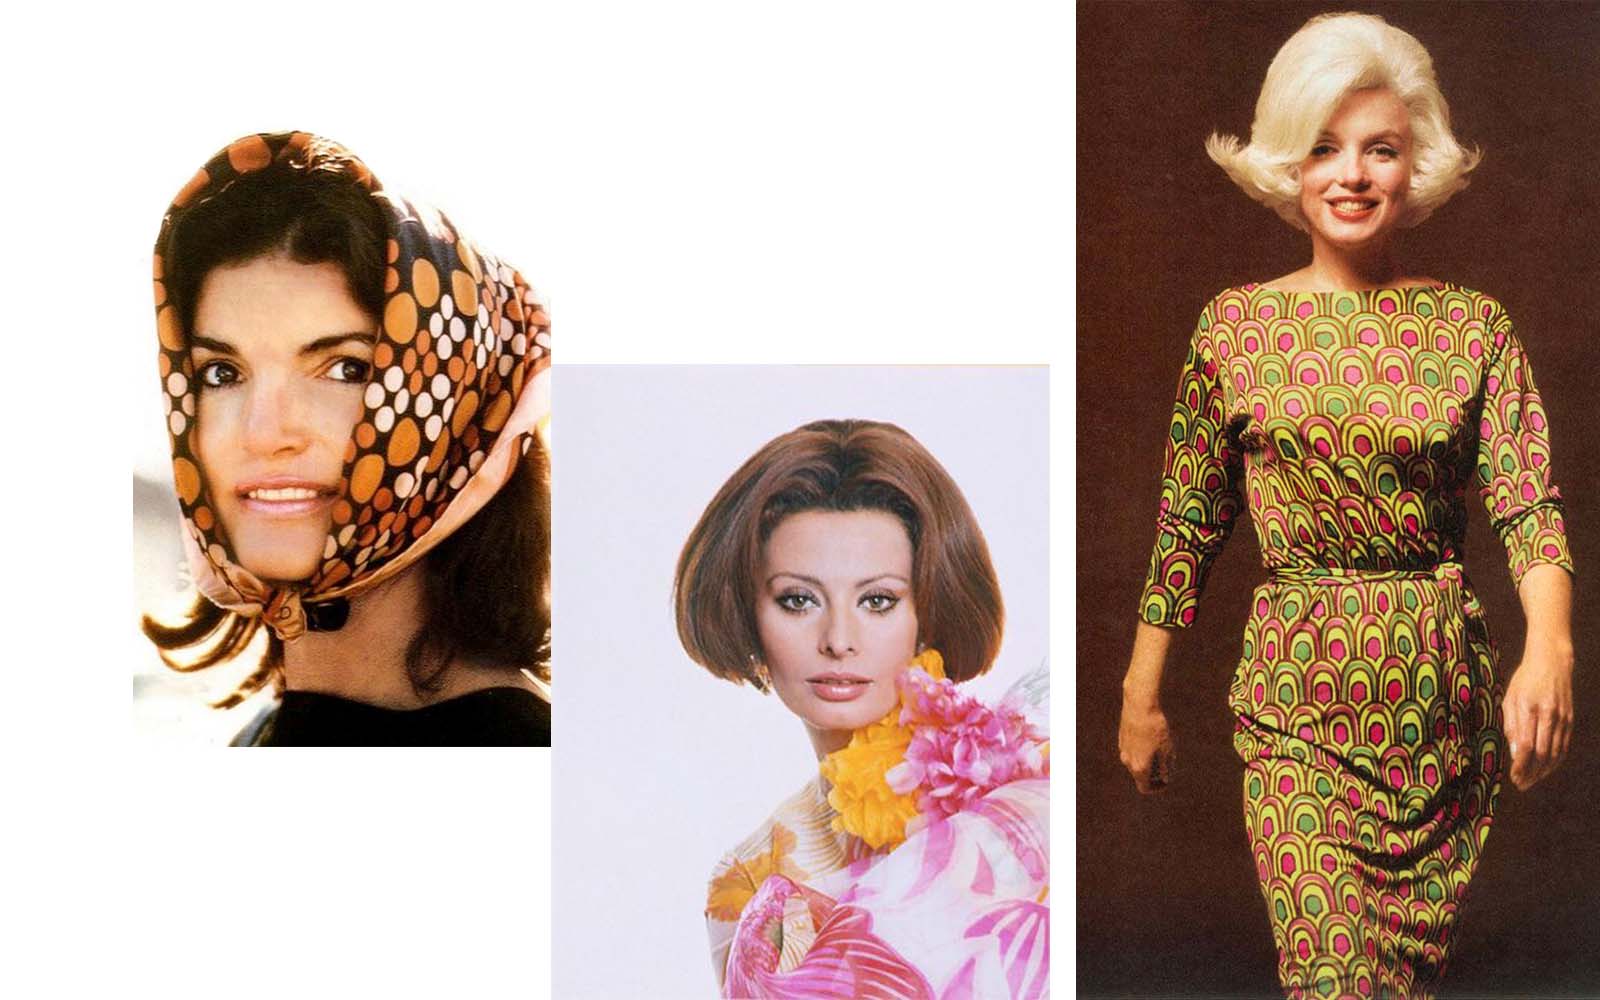 emilio pucci 1960s fashion